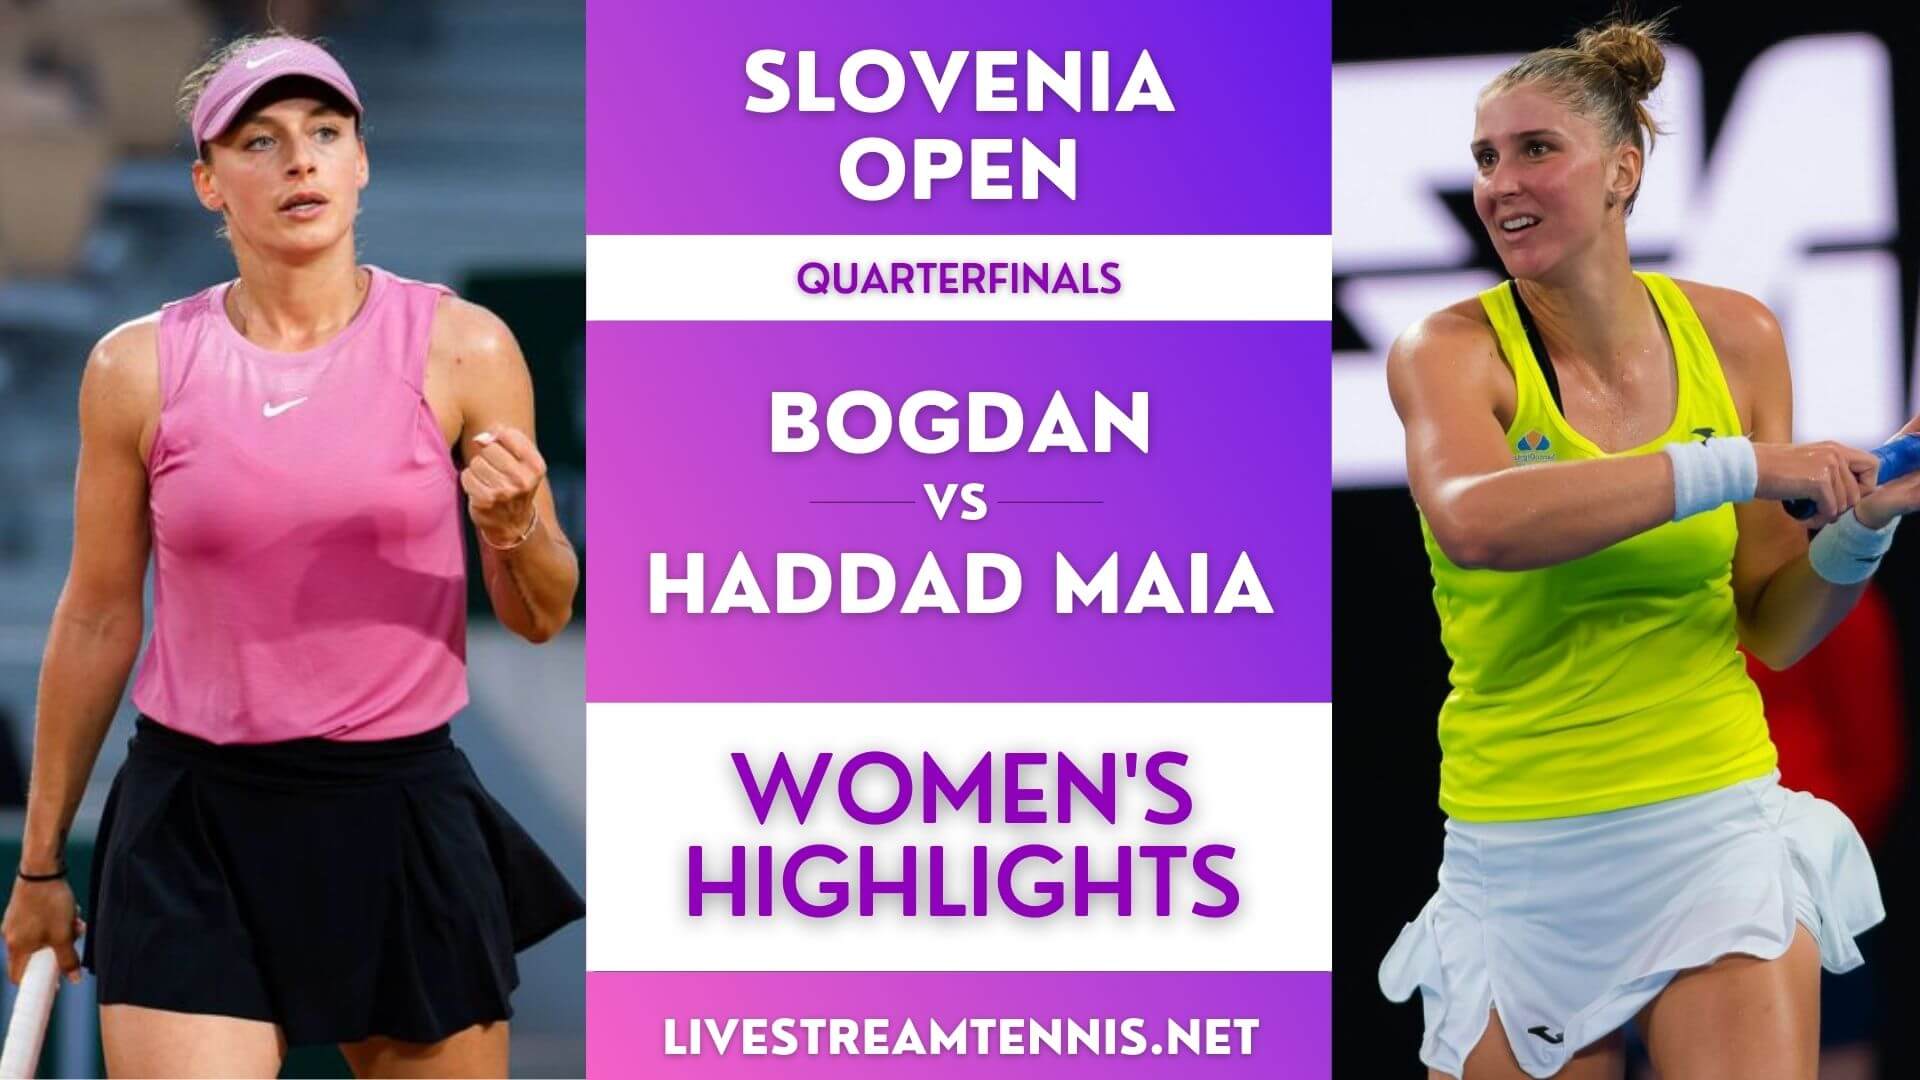 Slovenia Open Women Quarterfinal 2 Highlights 2022